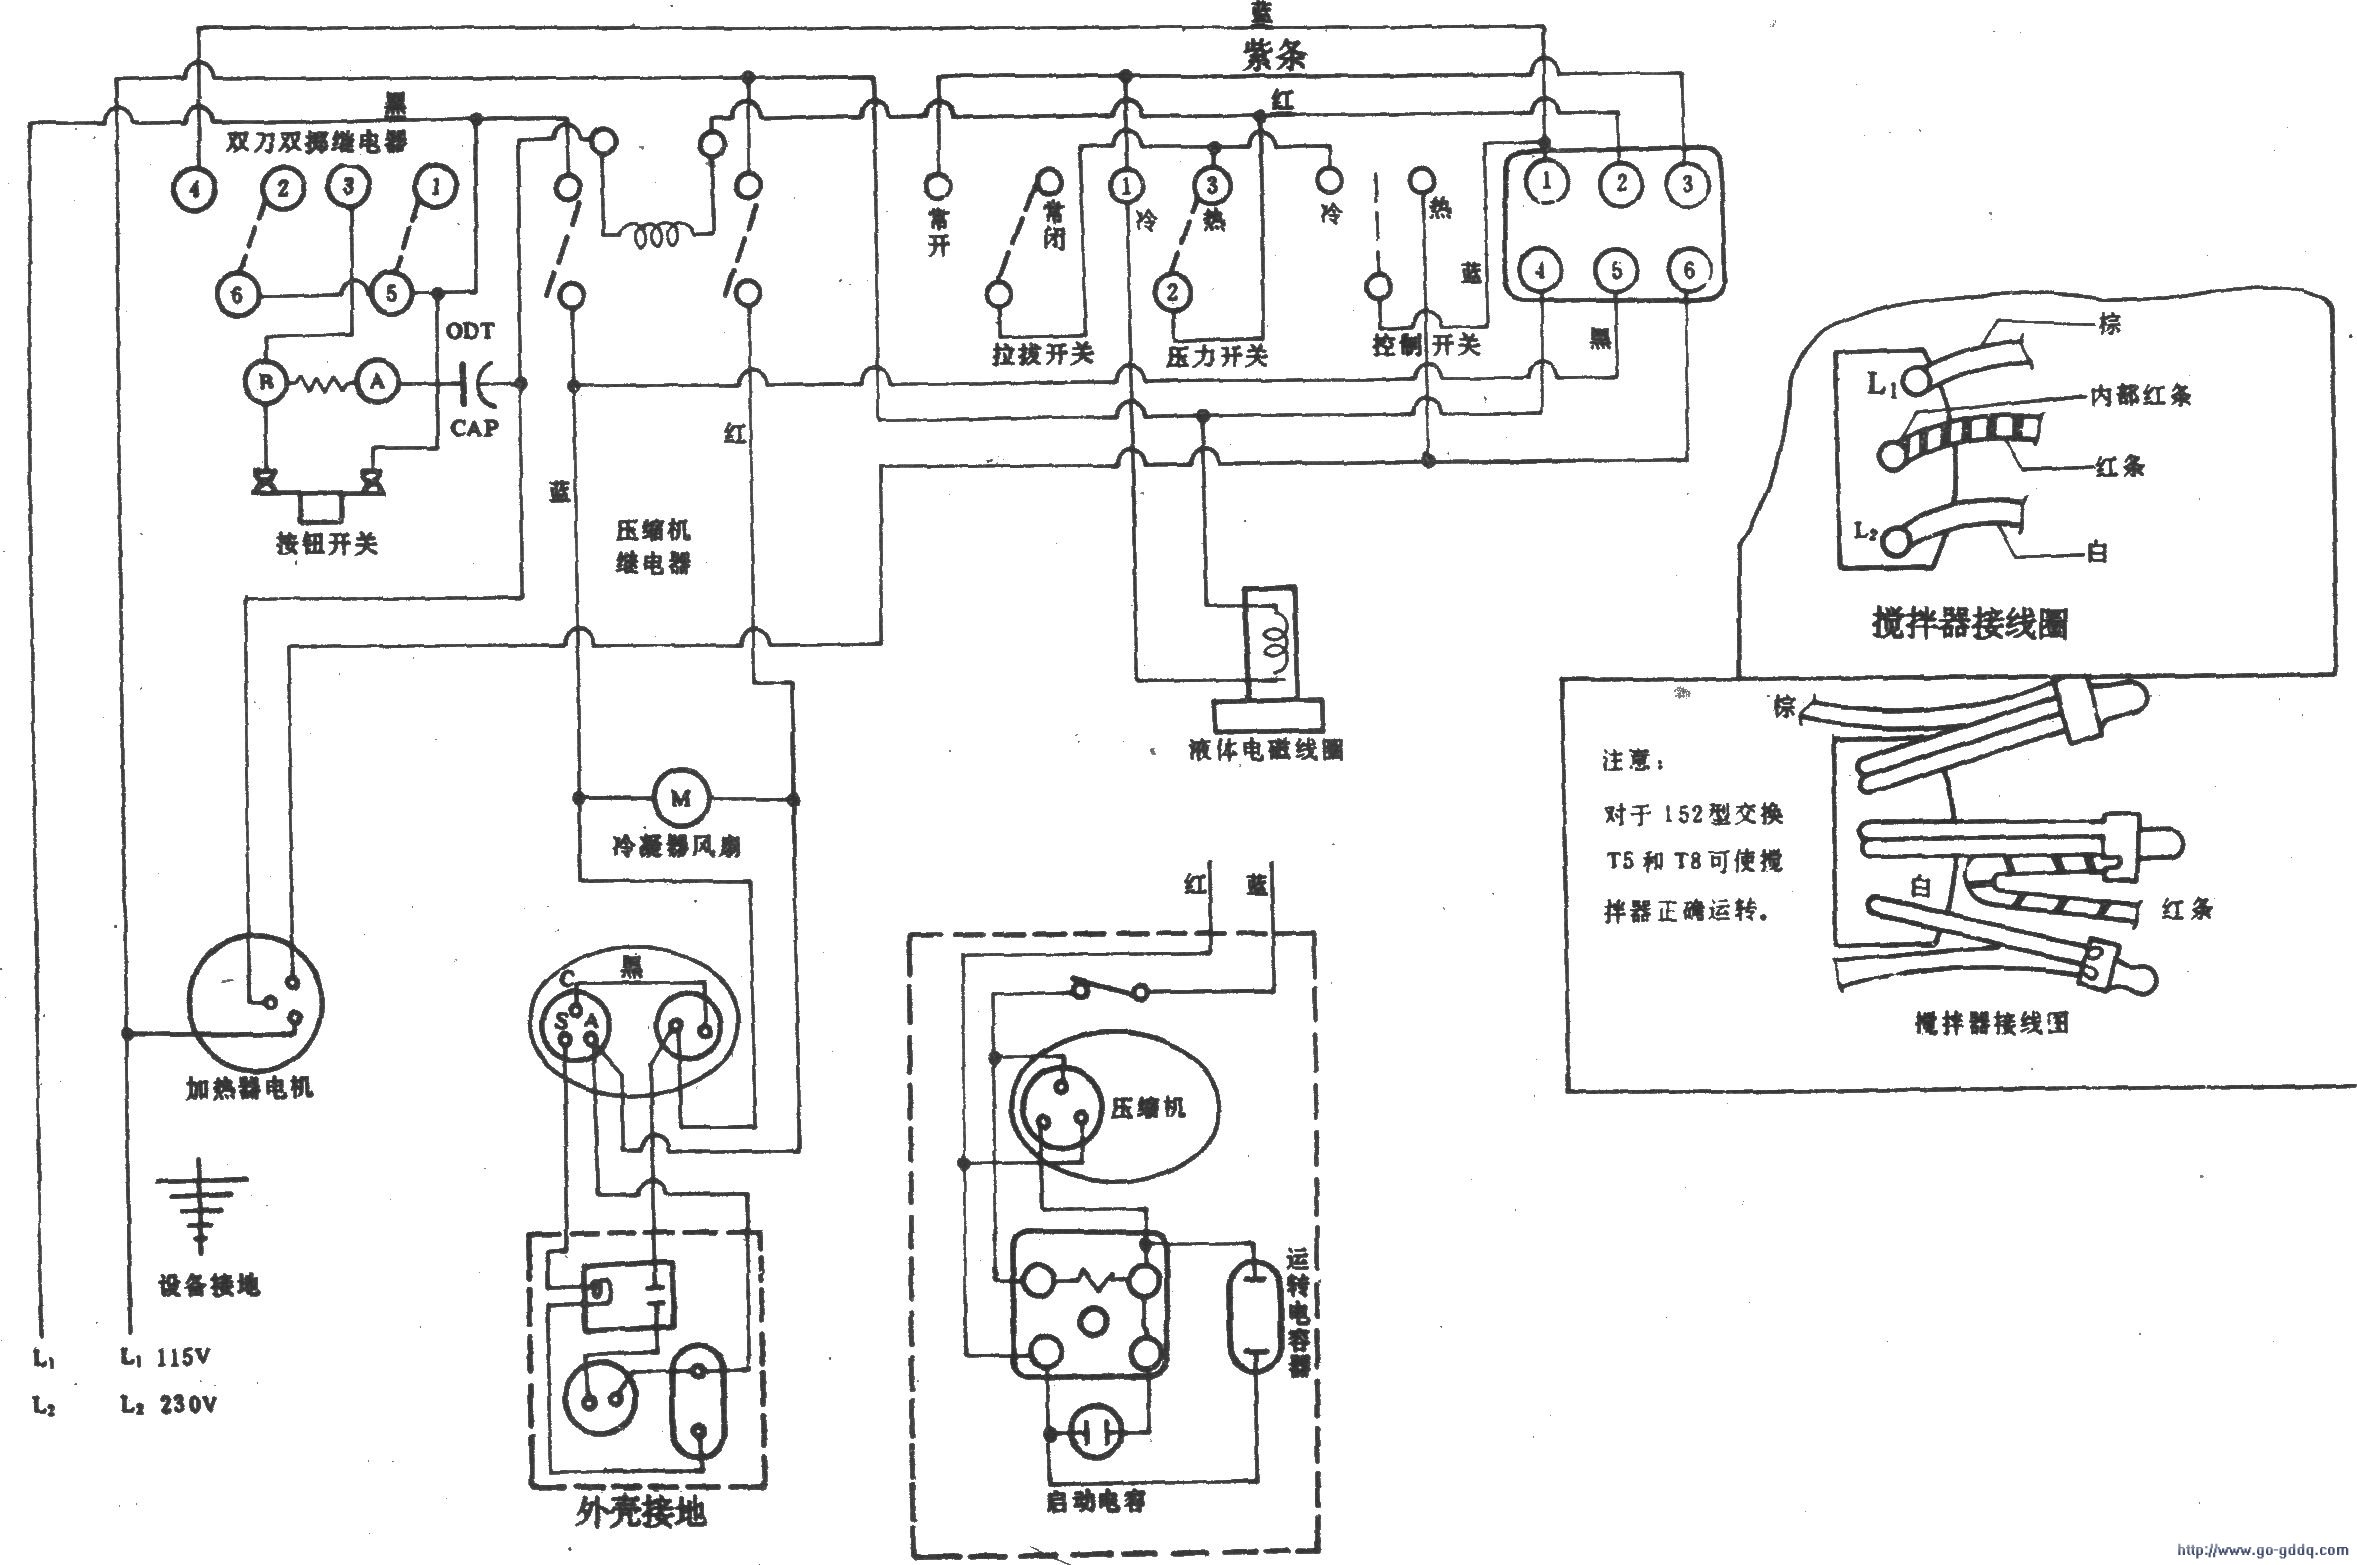 美国泰勒150/152型冰淇凌机电路图(温度控制)